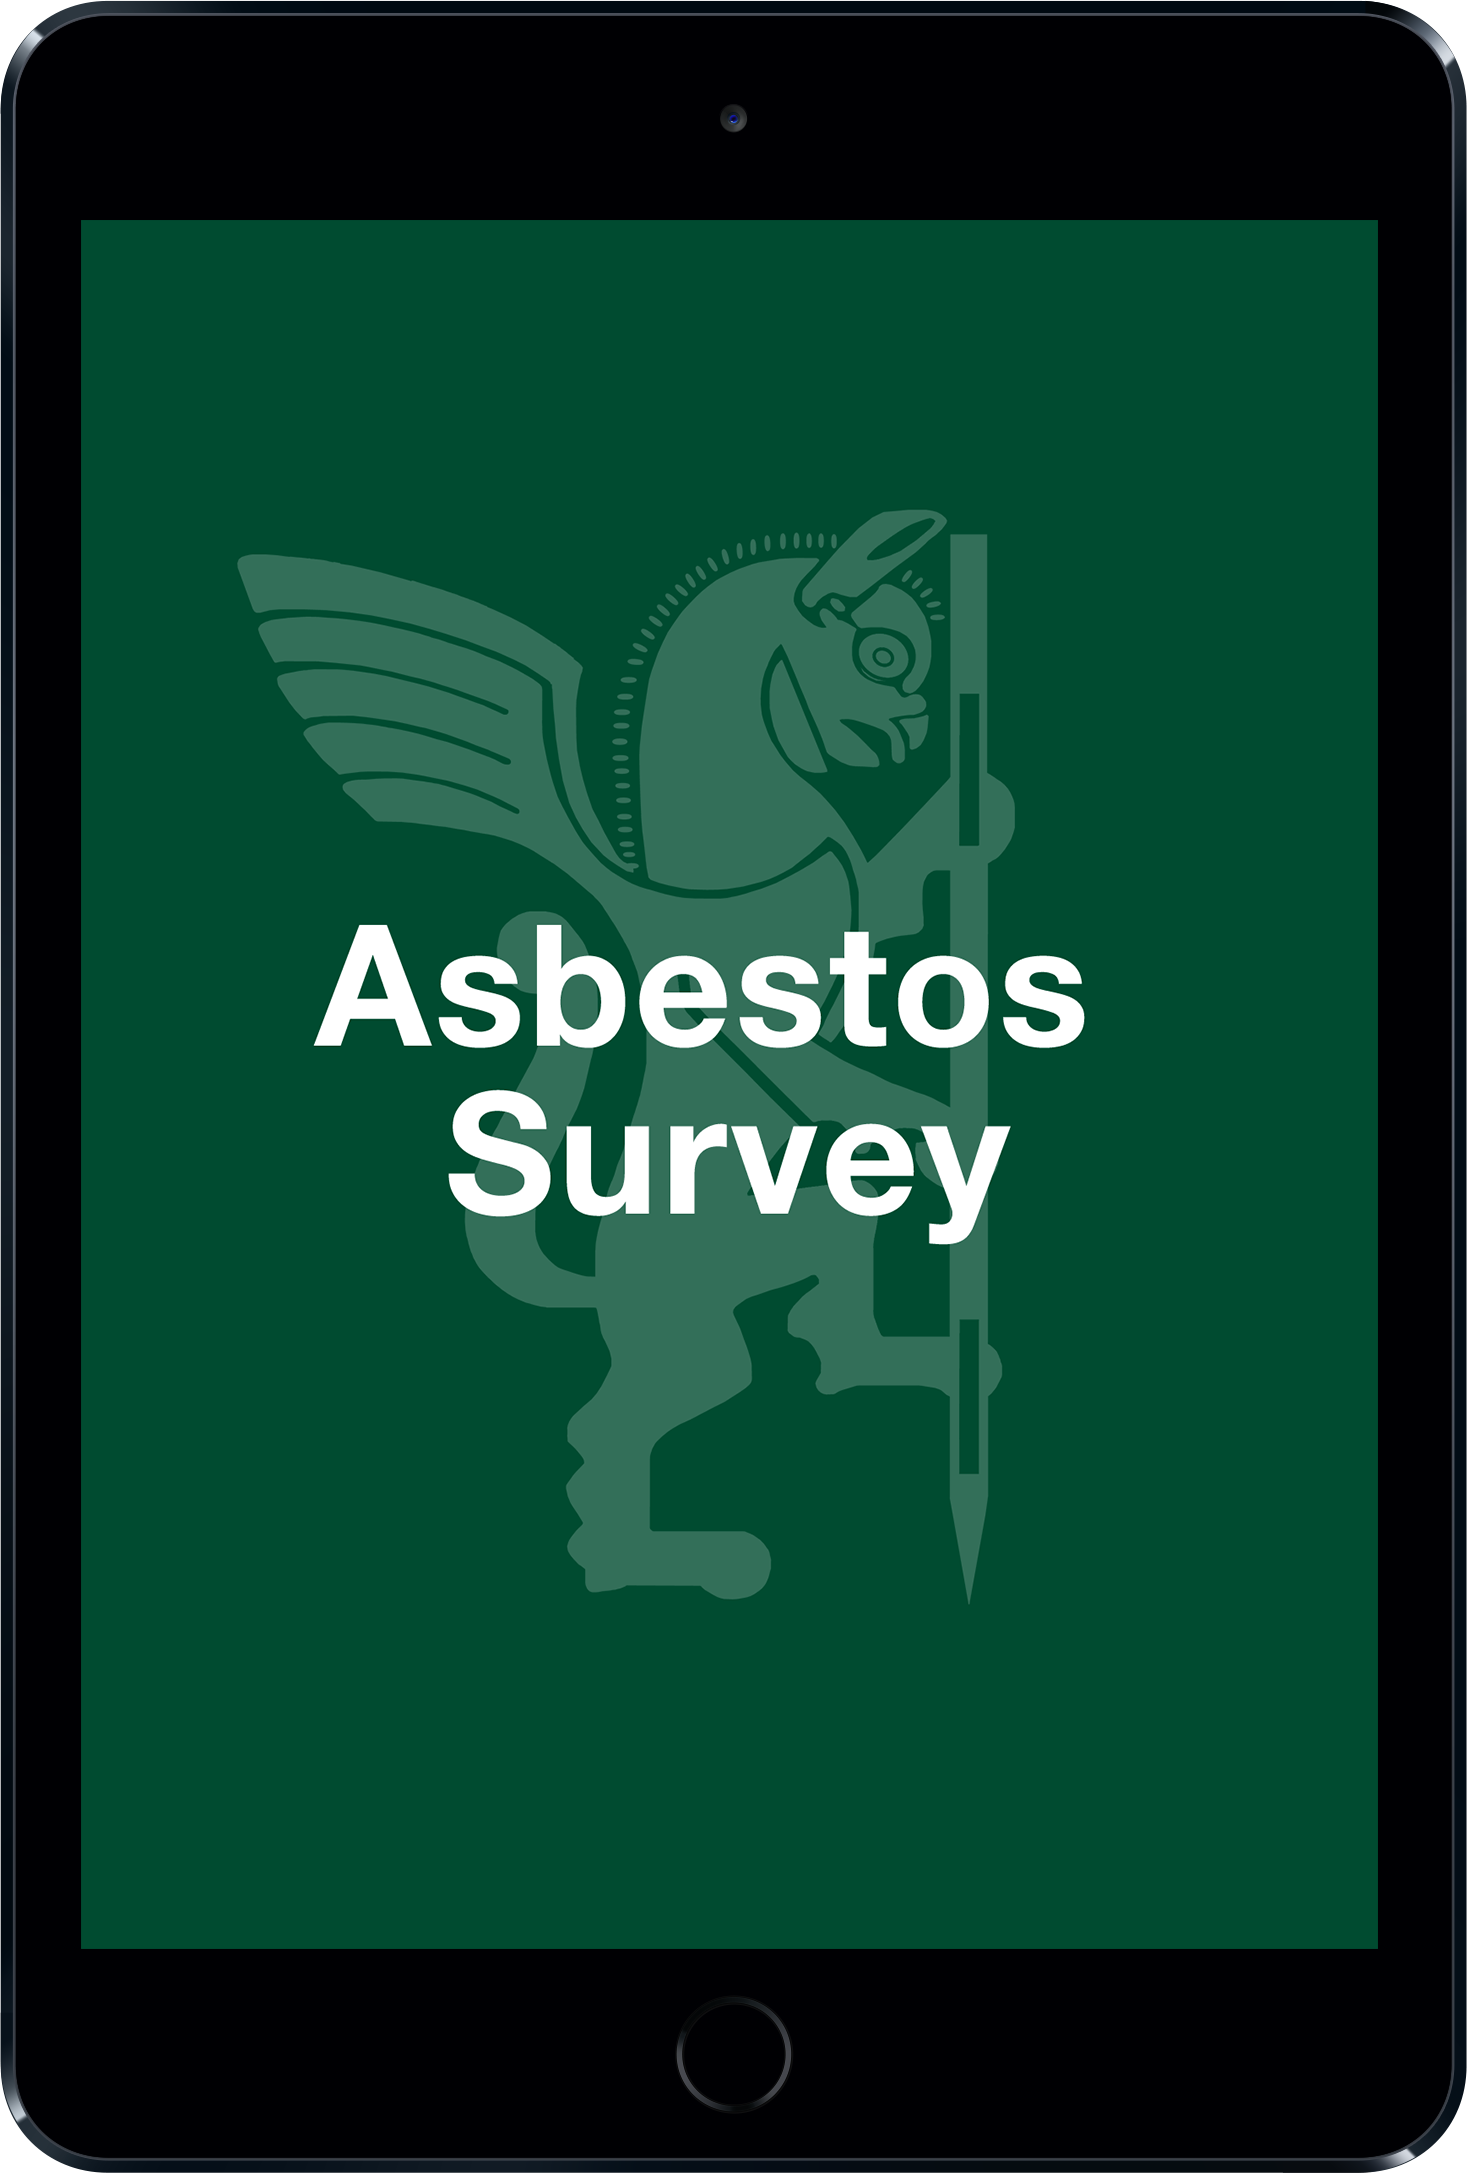 Asbestos survey b56a7e6e4a73858dd15a025160967c5e5e1f783587ed30075d8a0ac8e4e1ce36